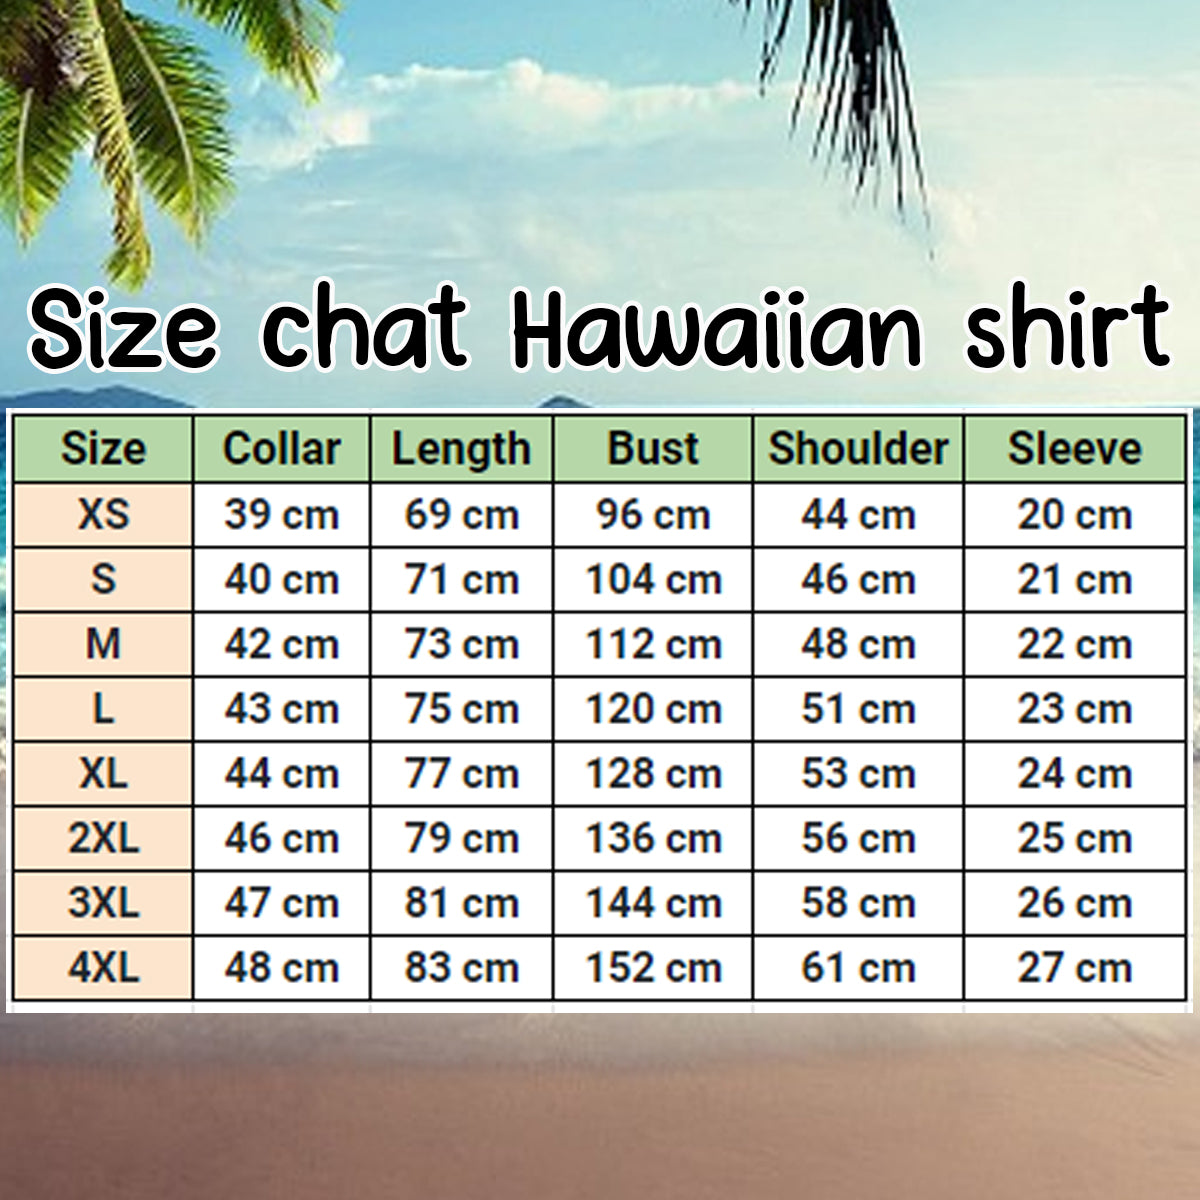 Hawaii Shirt – Summer Exotic Jungle Tropical Cowboy hawaii shirt